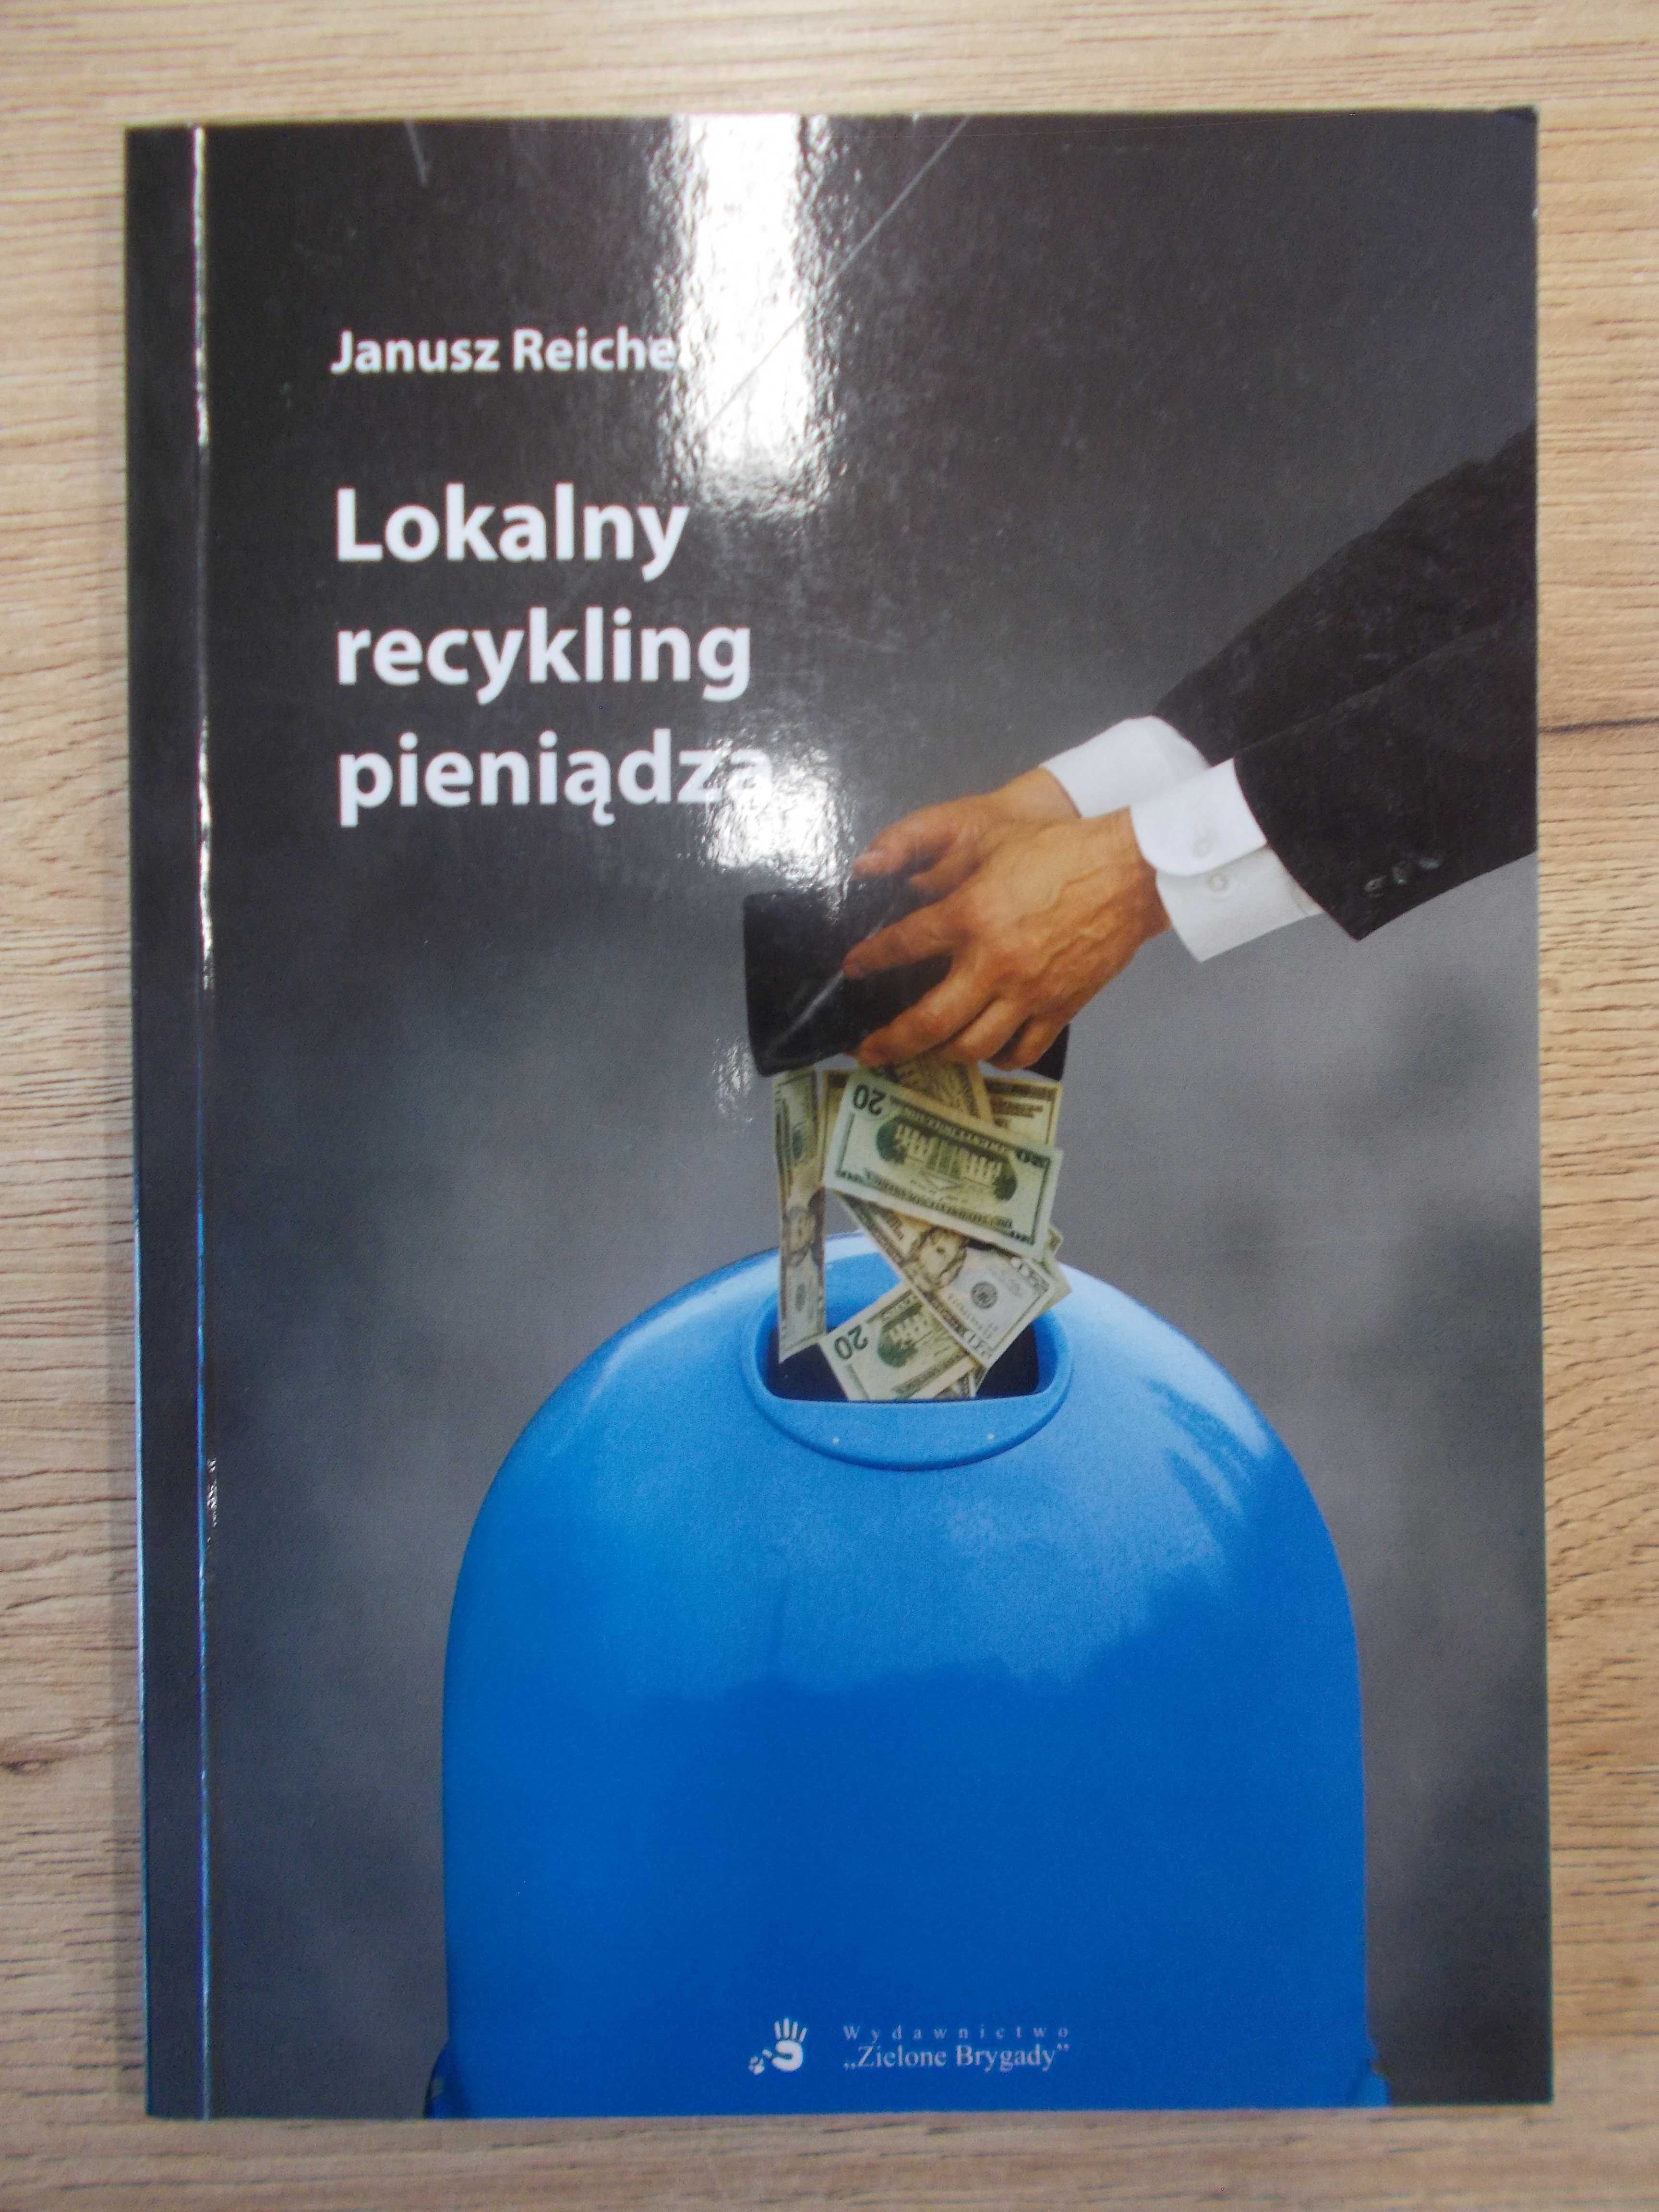 Lokalny recykling pieniądza - pieniądz zastępczy